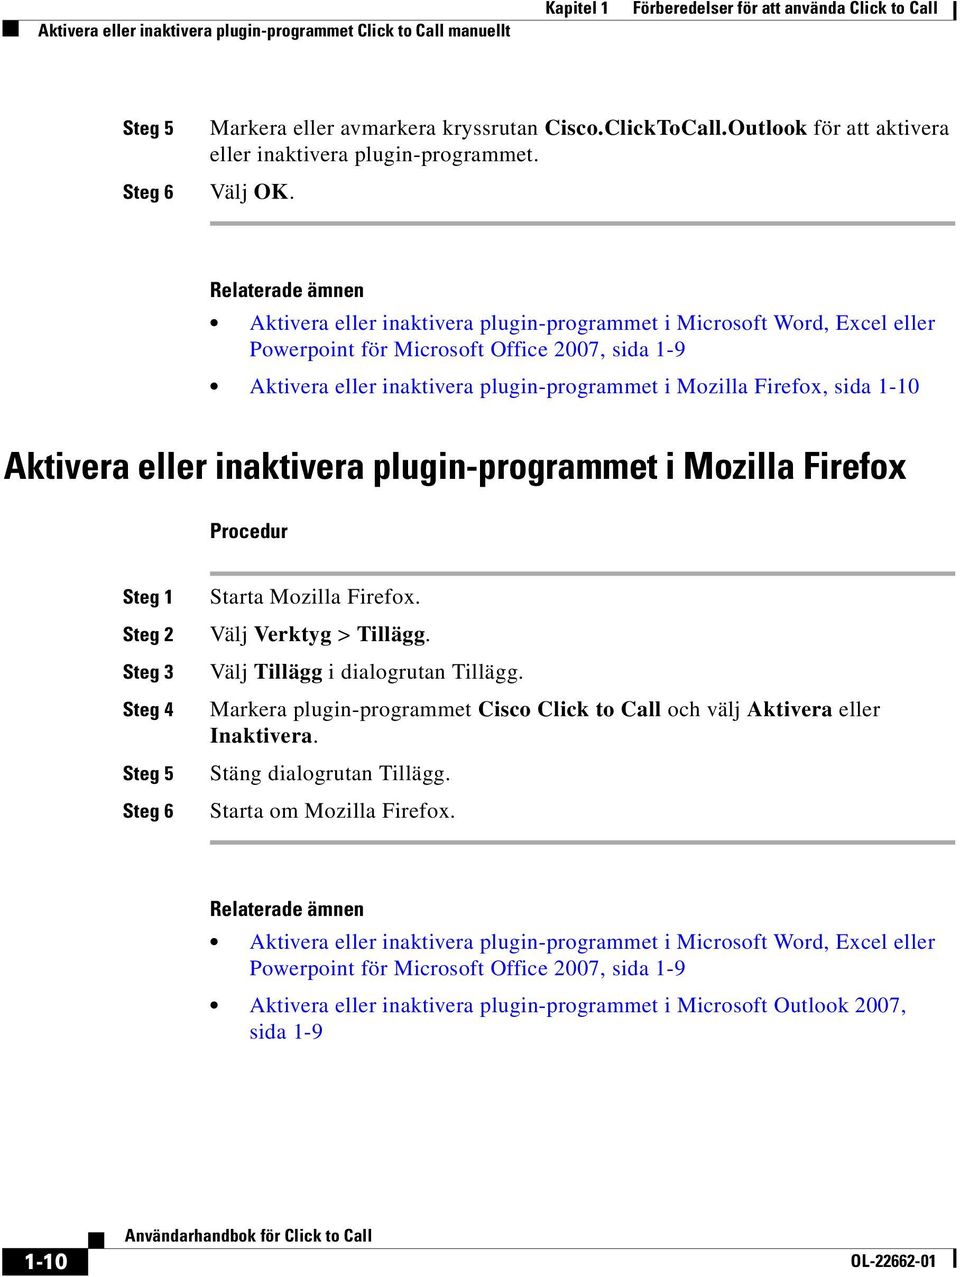 Aktivera eller inaktivera plugin-programmet i Microsoft Word, Excel eller Powerpoint för Microsoft Office 2007, sida 1-9 Aktivera eller inaktivera plugin-programmet i Mozilla Firefox, sida 1-10